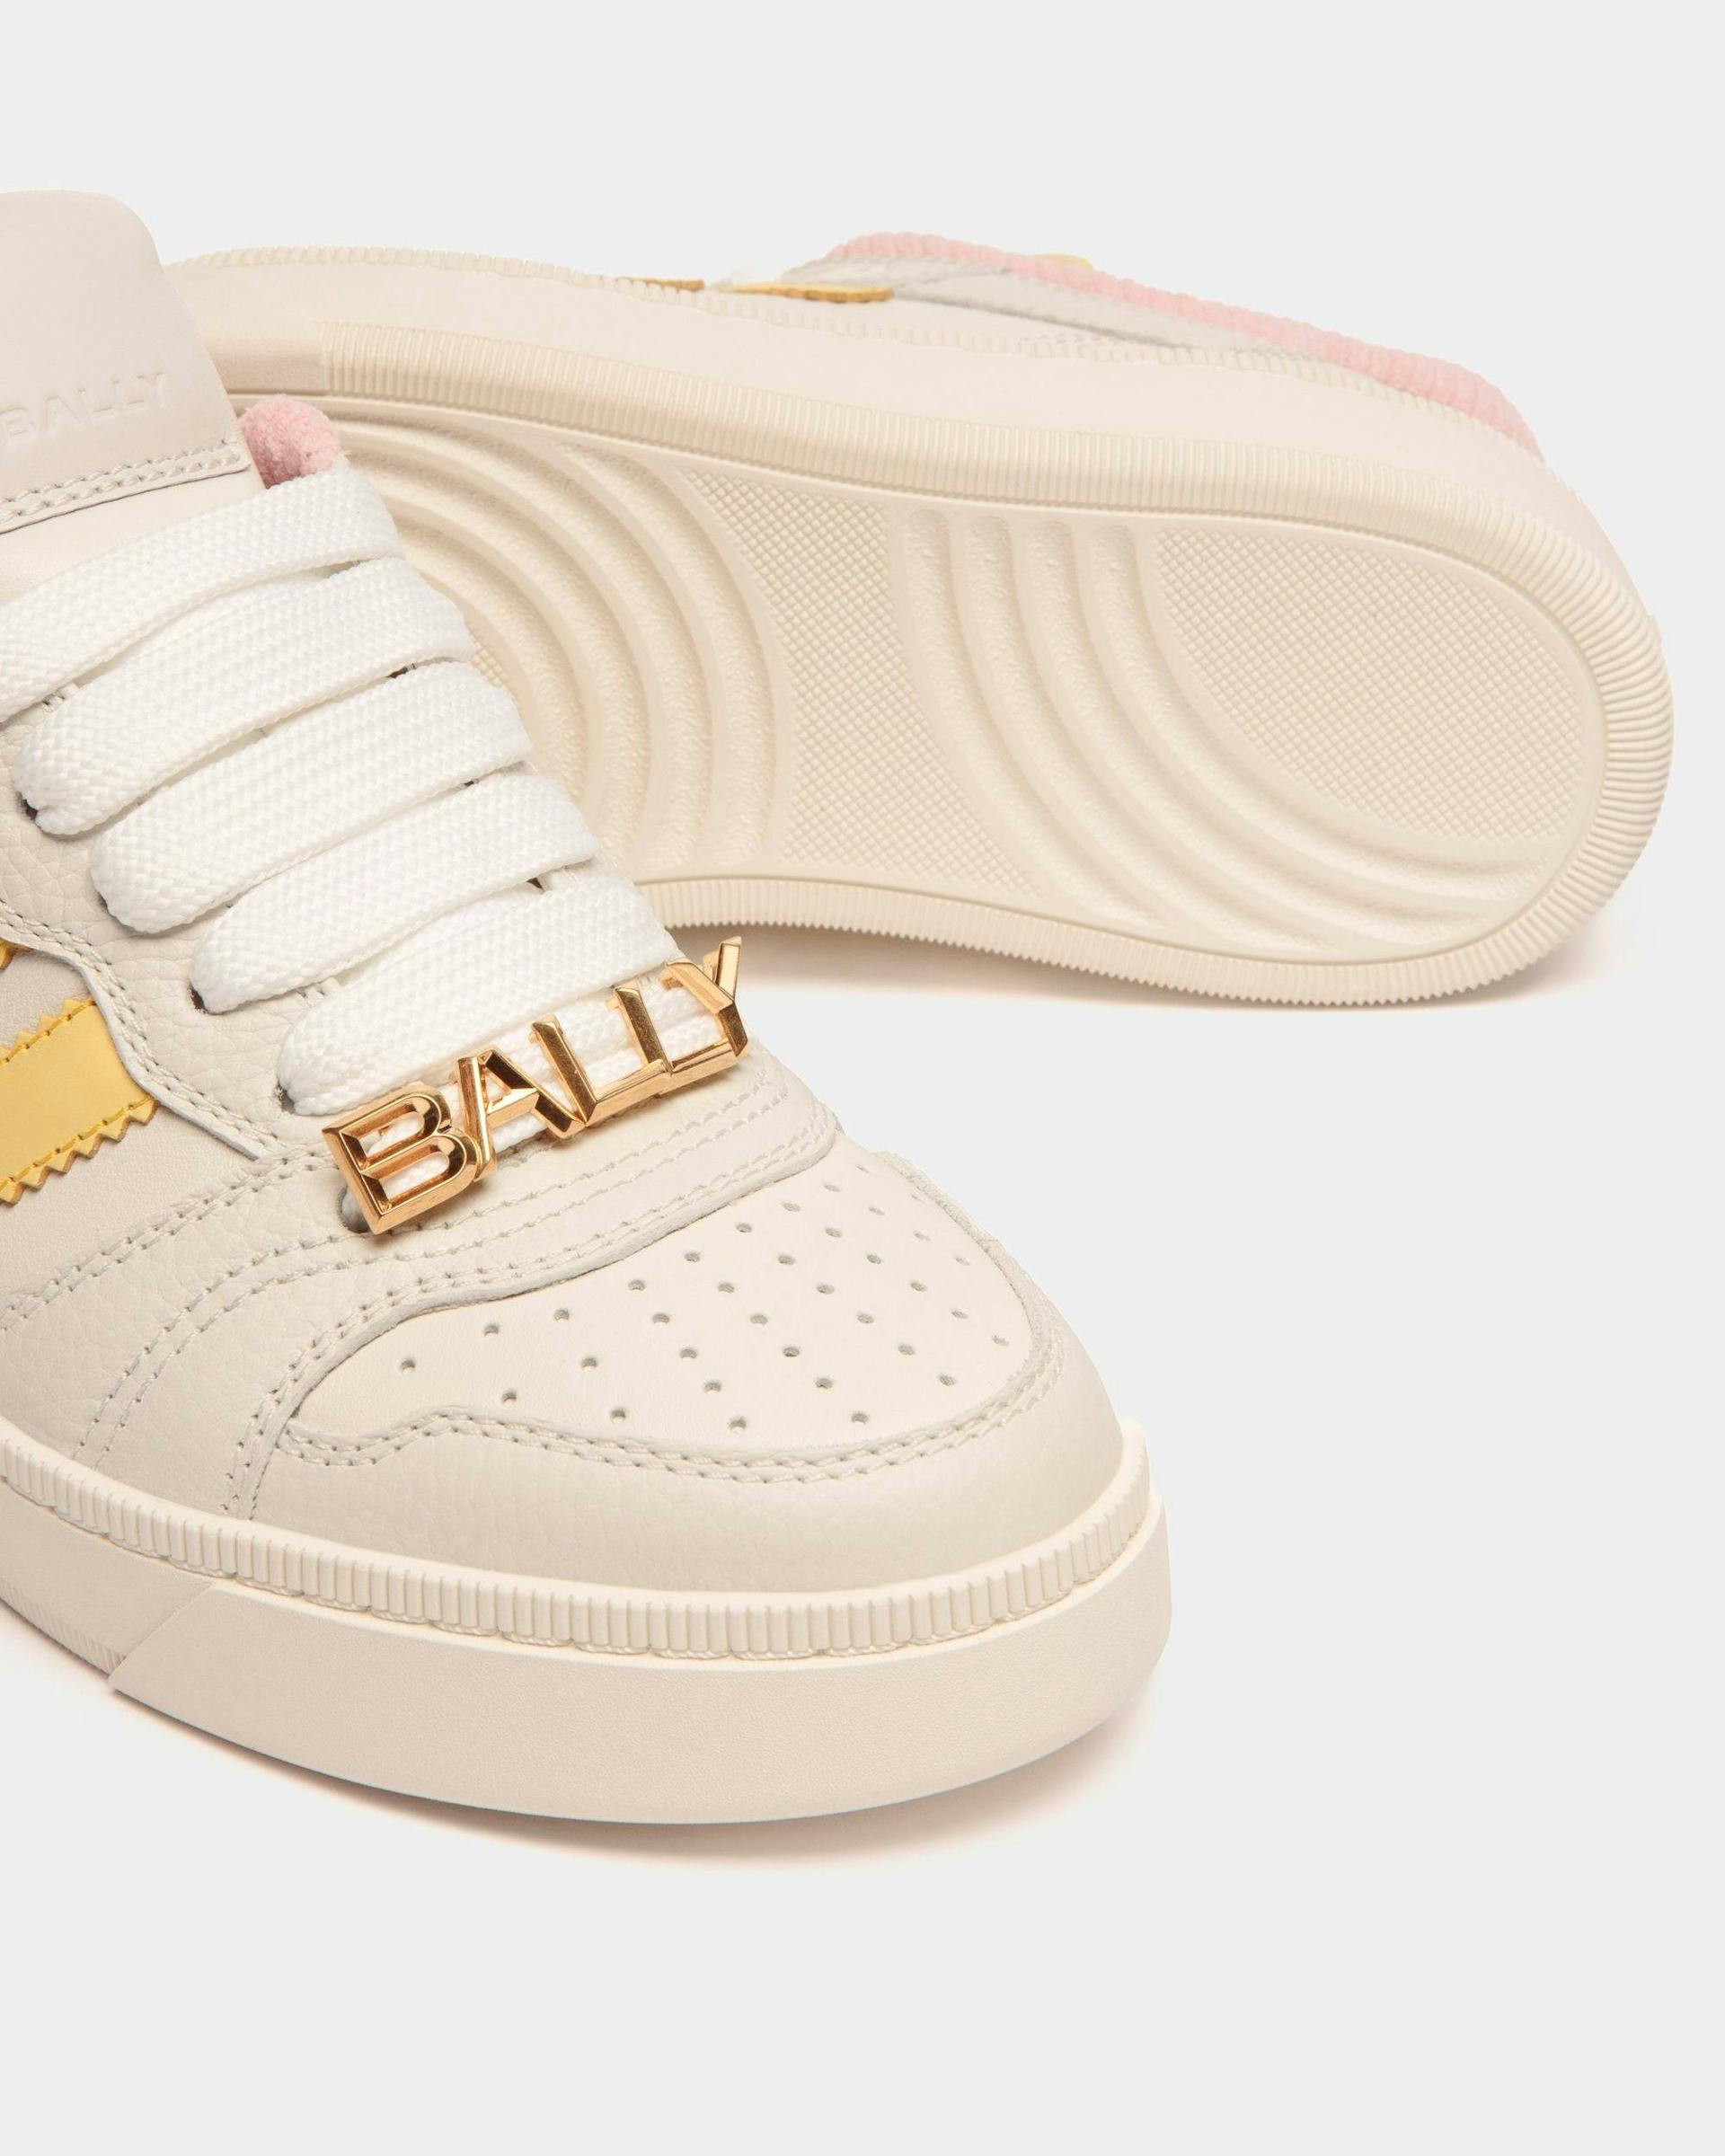 Women's Raise Sneaker In Multicolor Leather | Bally | Still Life Below